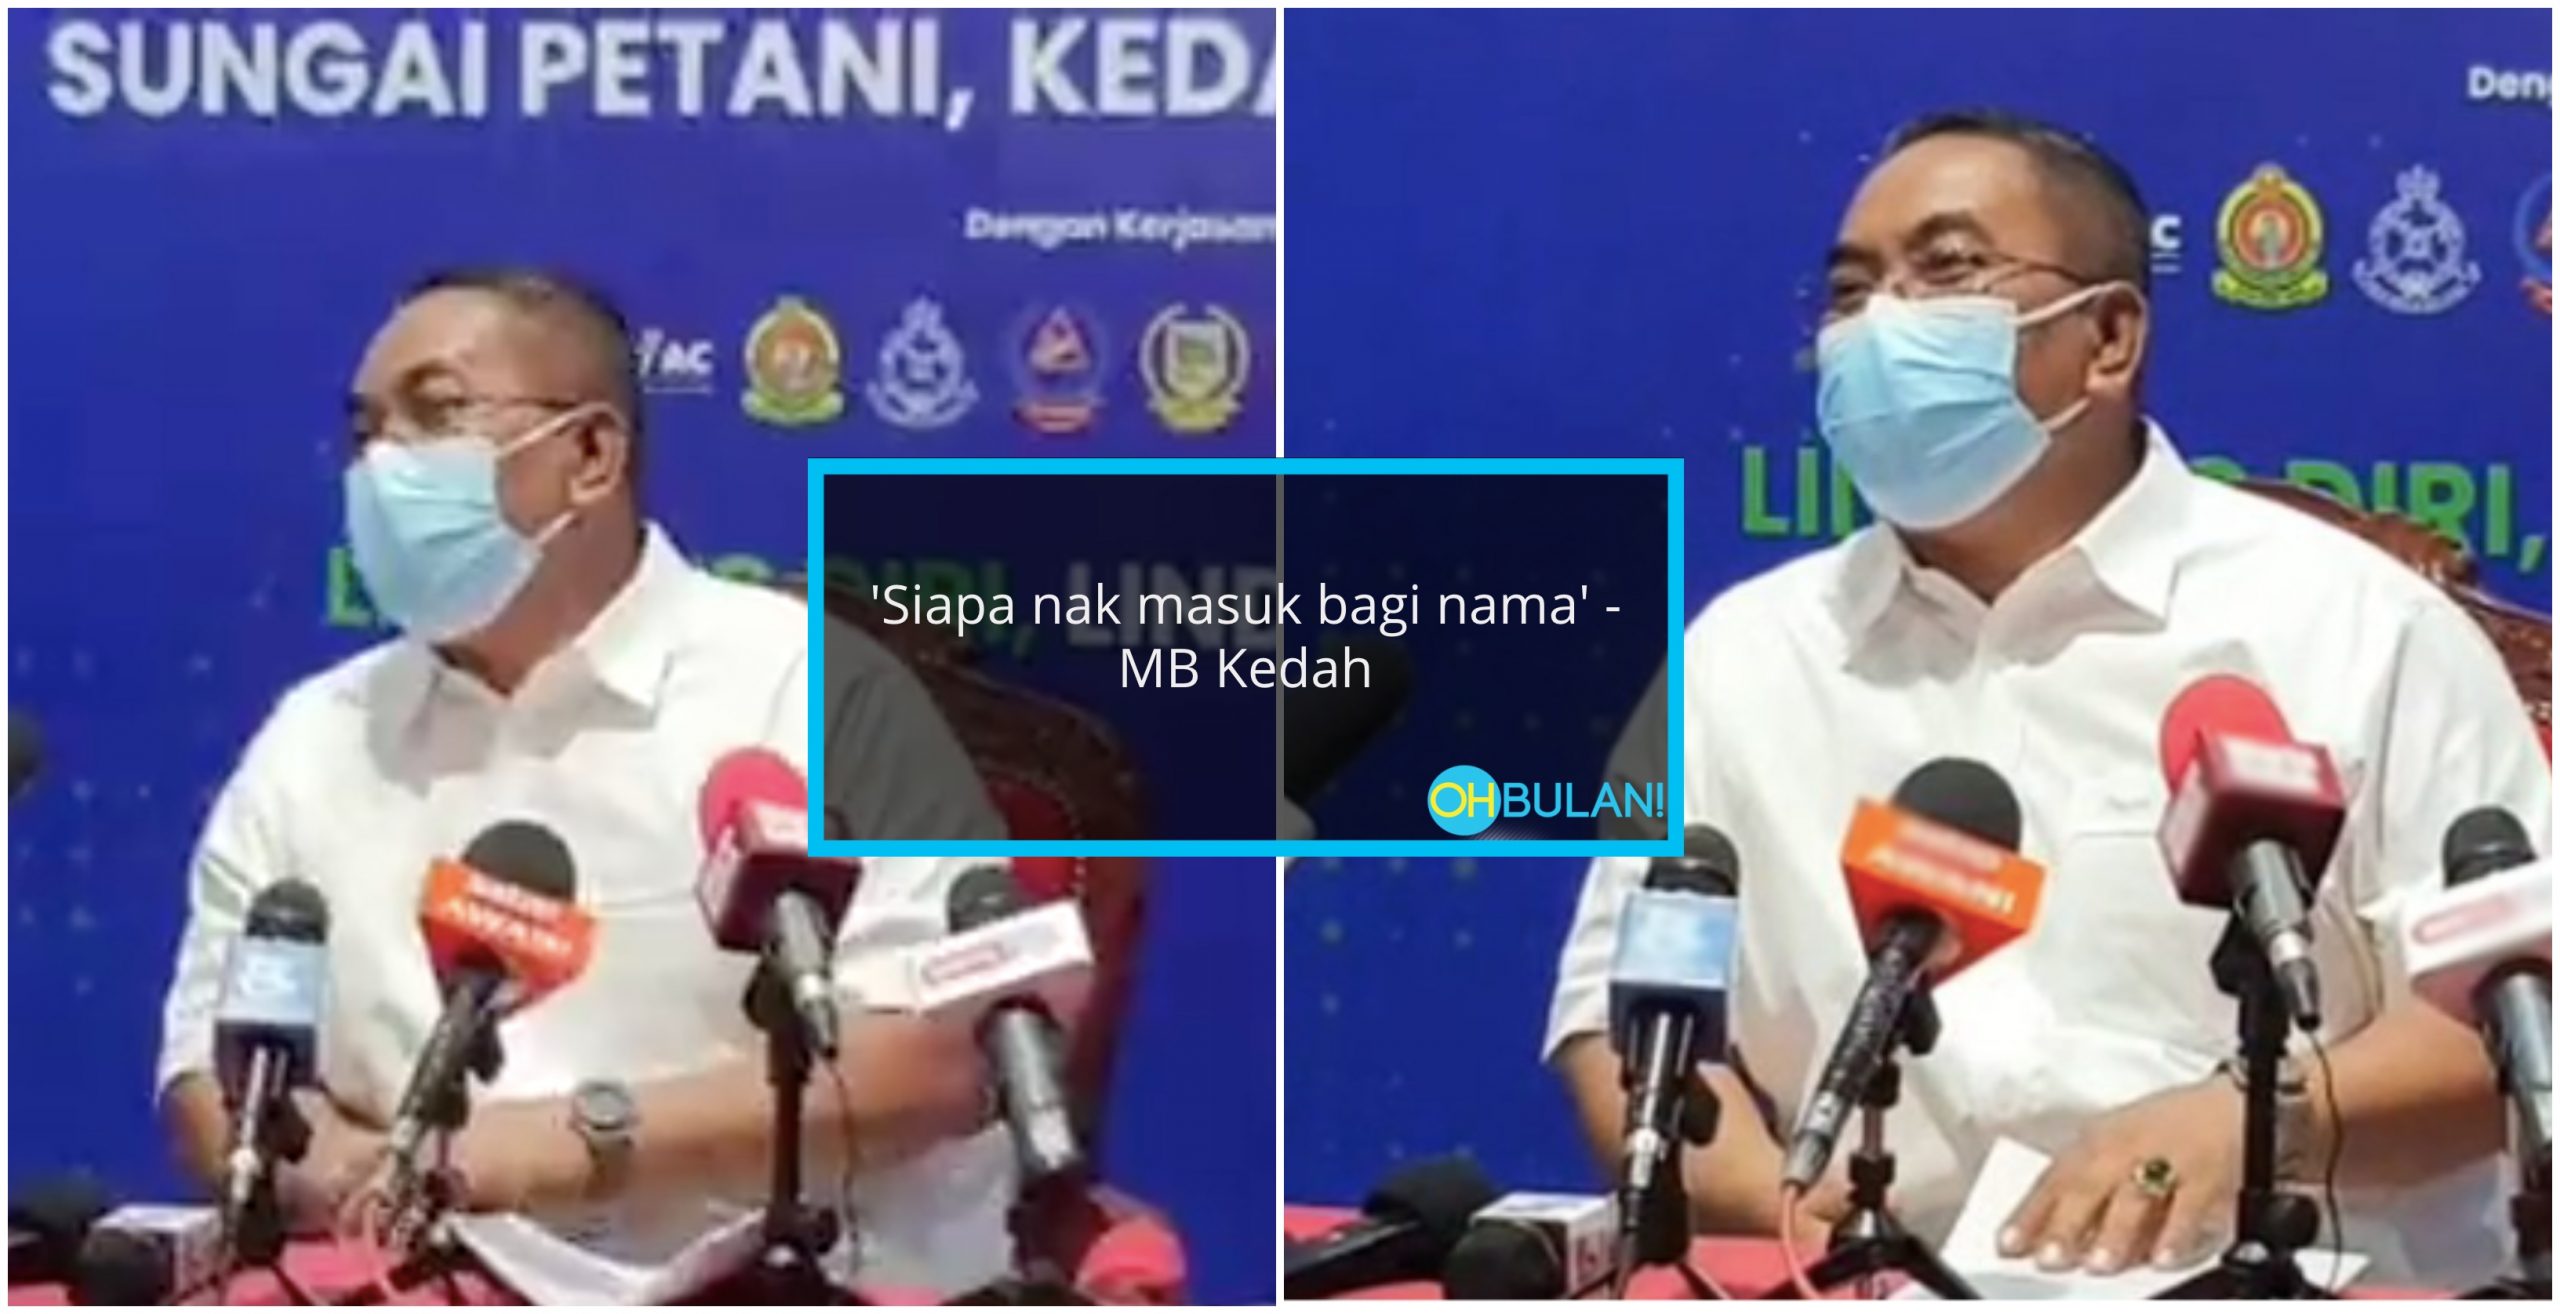 ‘Siapa Nak Masuk, Bagi Nama’ – Gurauan MB Kedah Dikritik Ramai, Dianggap Tidak Sensitif